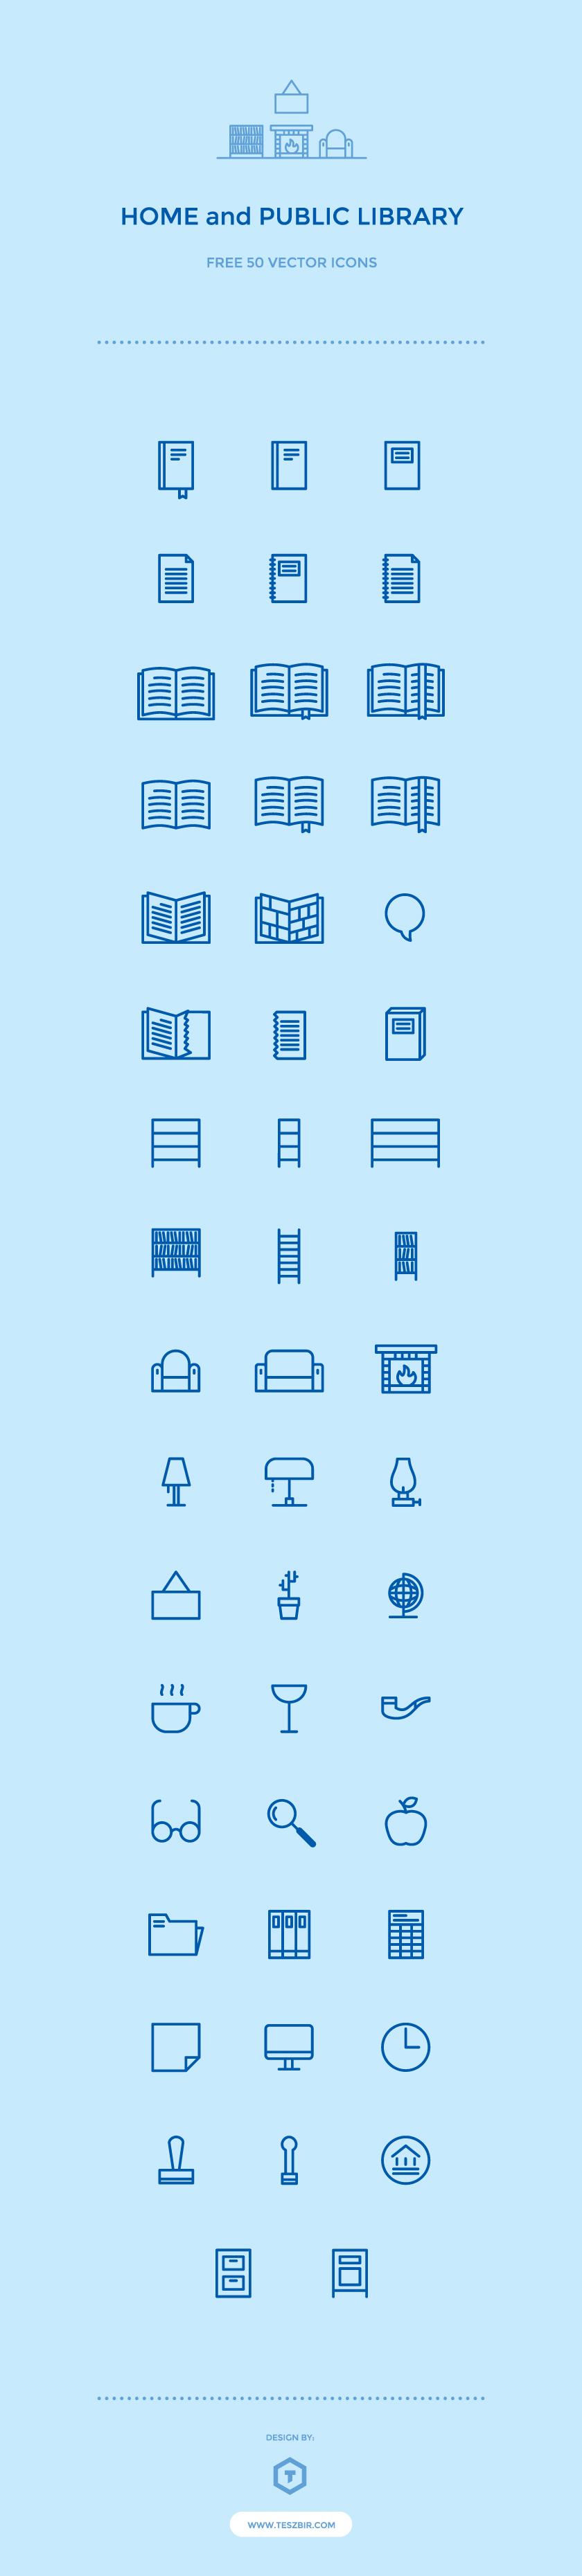 Icon icons icon set iconpack library book books bookshelf comics free icons free icon set